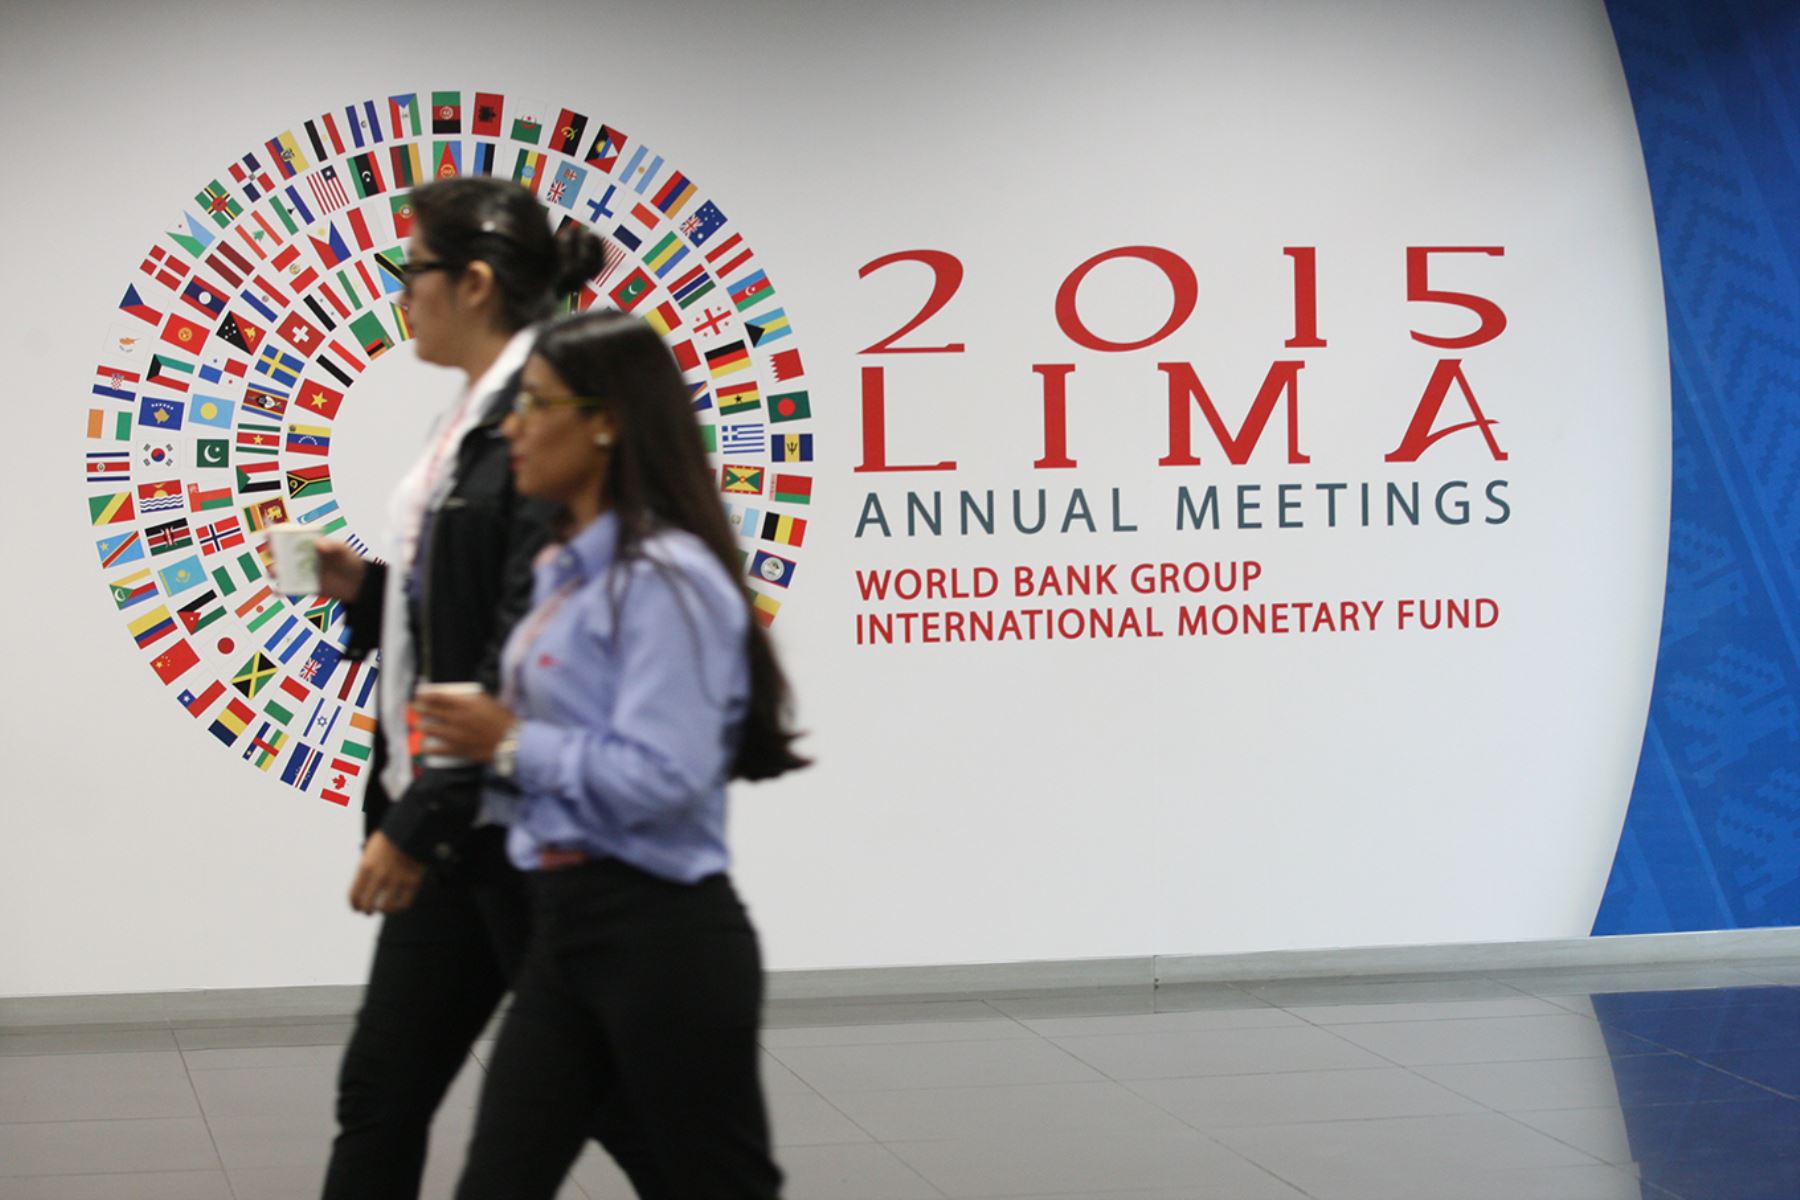 LIMA, PERÚ - OCTUBRE 06. Reuniones Anuales del Banco Mundial y Fondo Monetario Internacional.

Foto: ANDINA/Juan Carlos Guzmán Negrini.